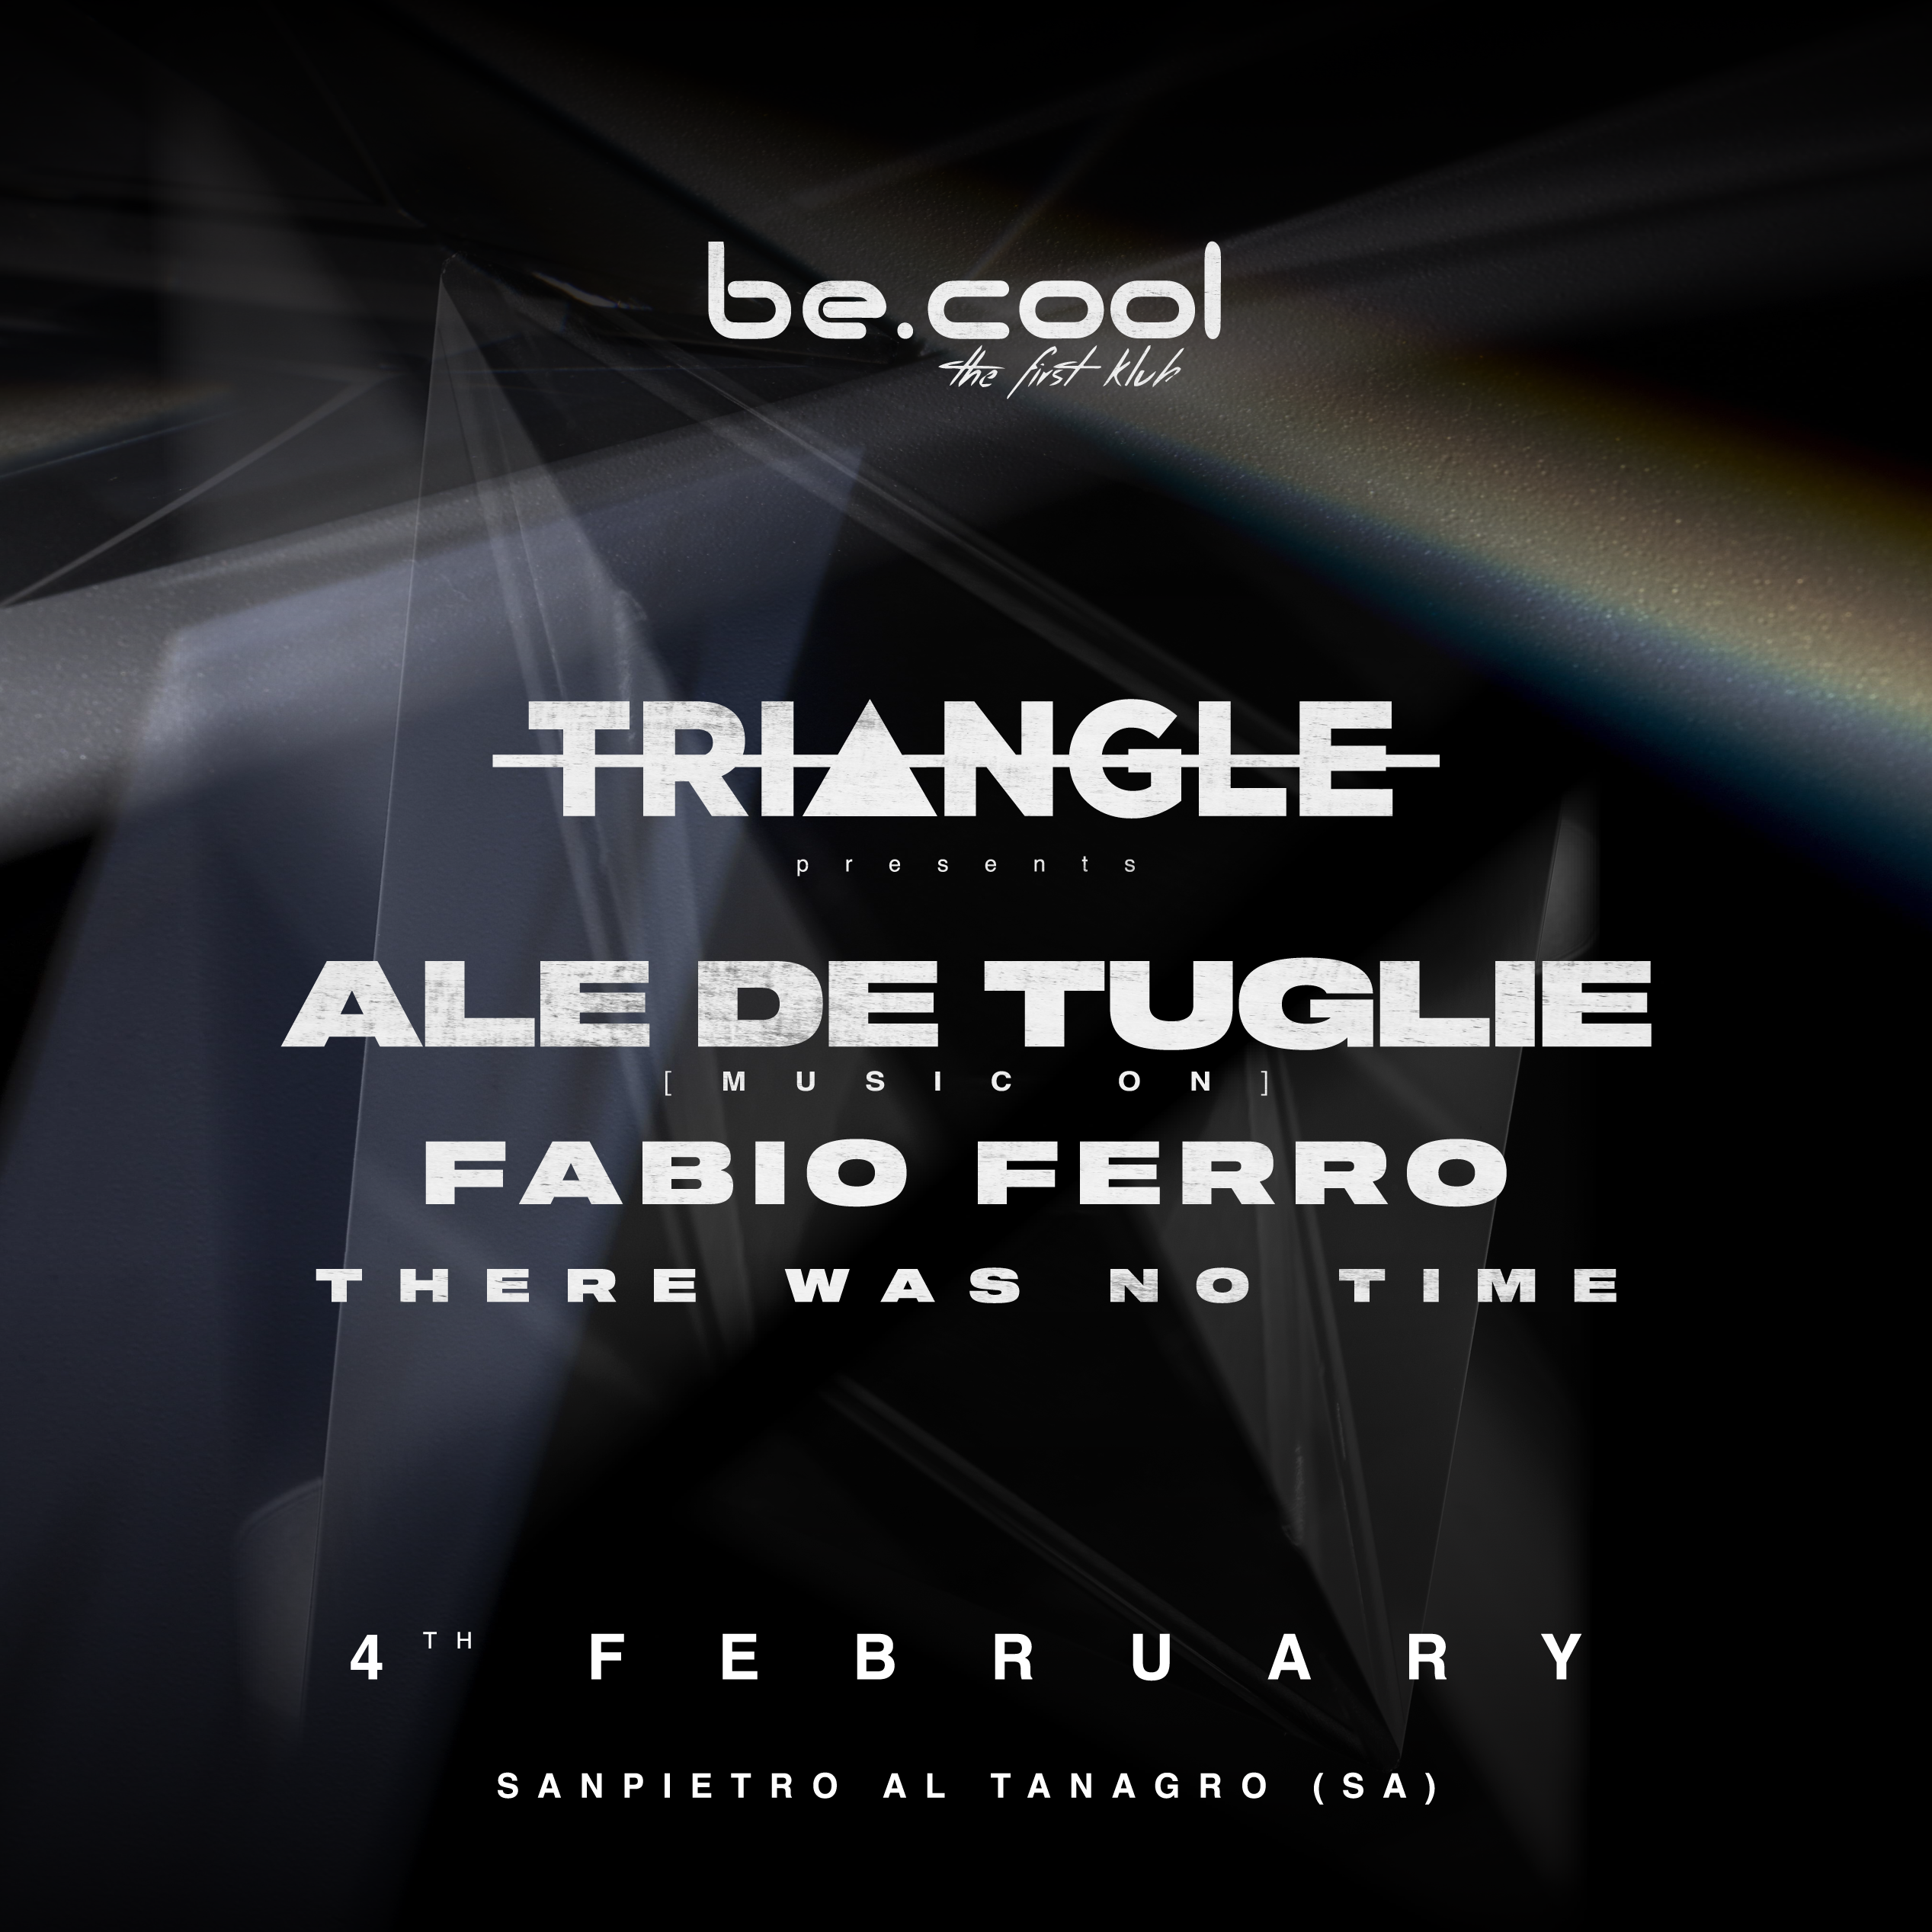 TRIANGLE Party with Ale De Tuglie, Fabio Ferro & There Was No Time - フライヤー表